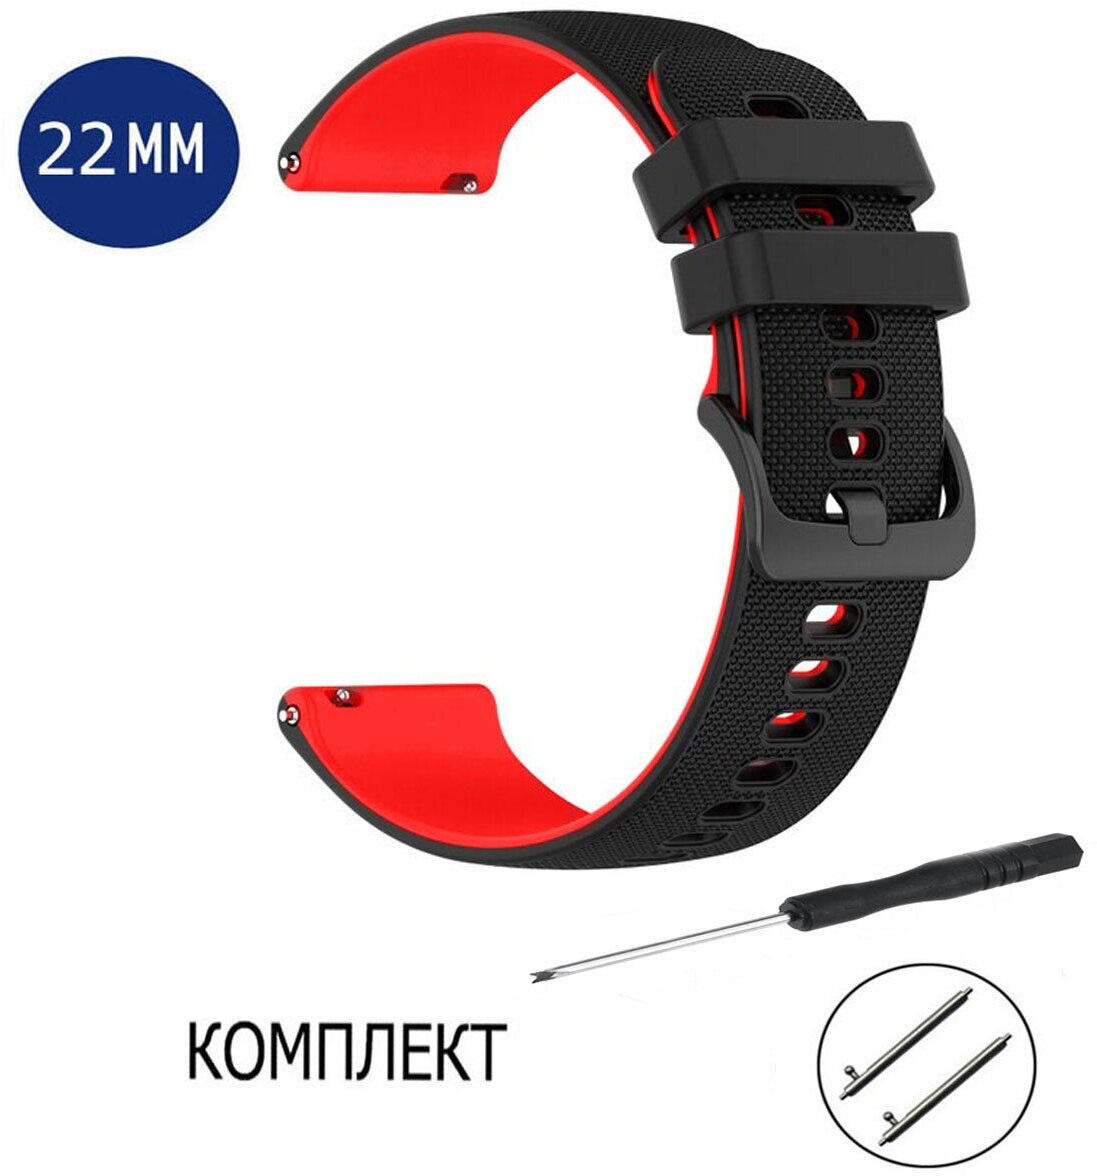 Ремешок силиконовый для смарт-часов Xiaomi Amazfit, Samsung, Huawei, Honor 22 мм черный; красный